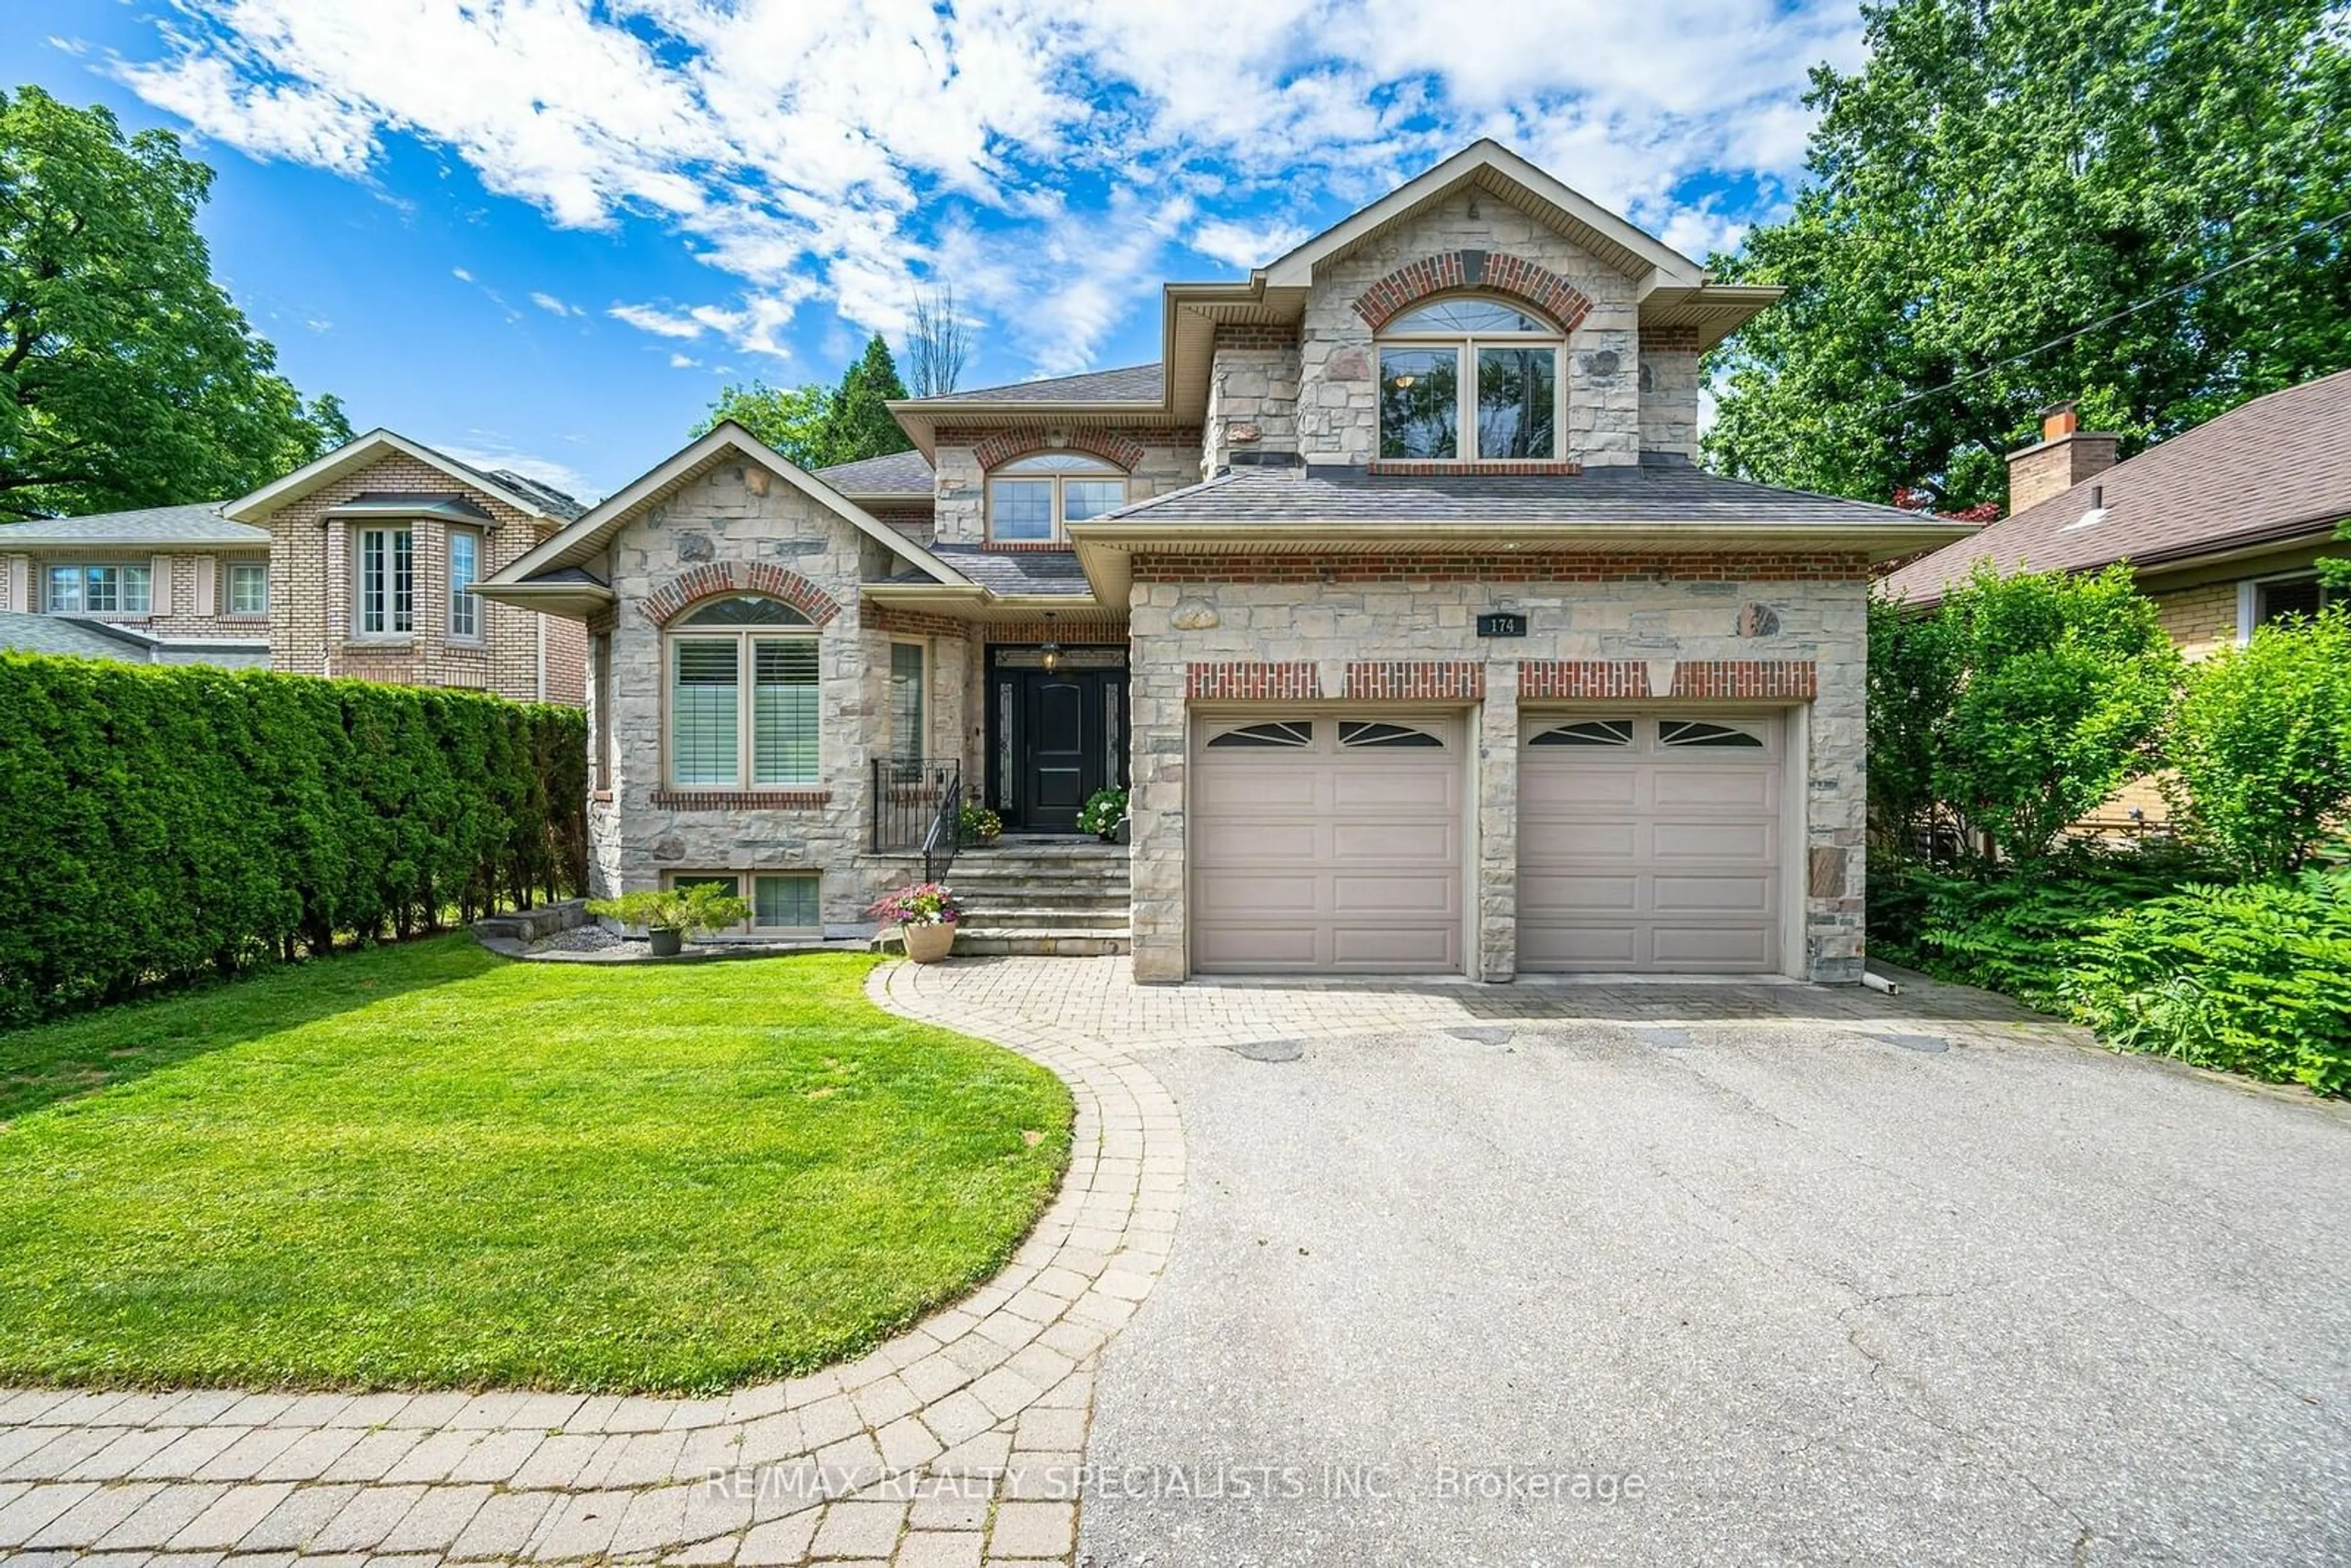 Home with brick exterior material for 174 Burnhamthorpe Rd, Toronto Ontario M9A 1H6